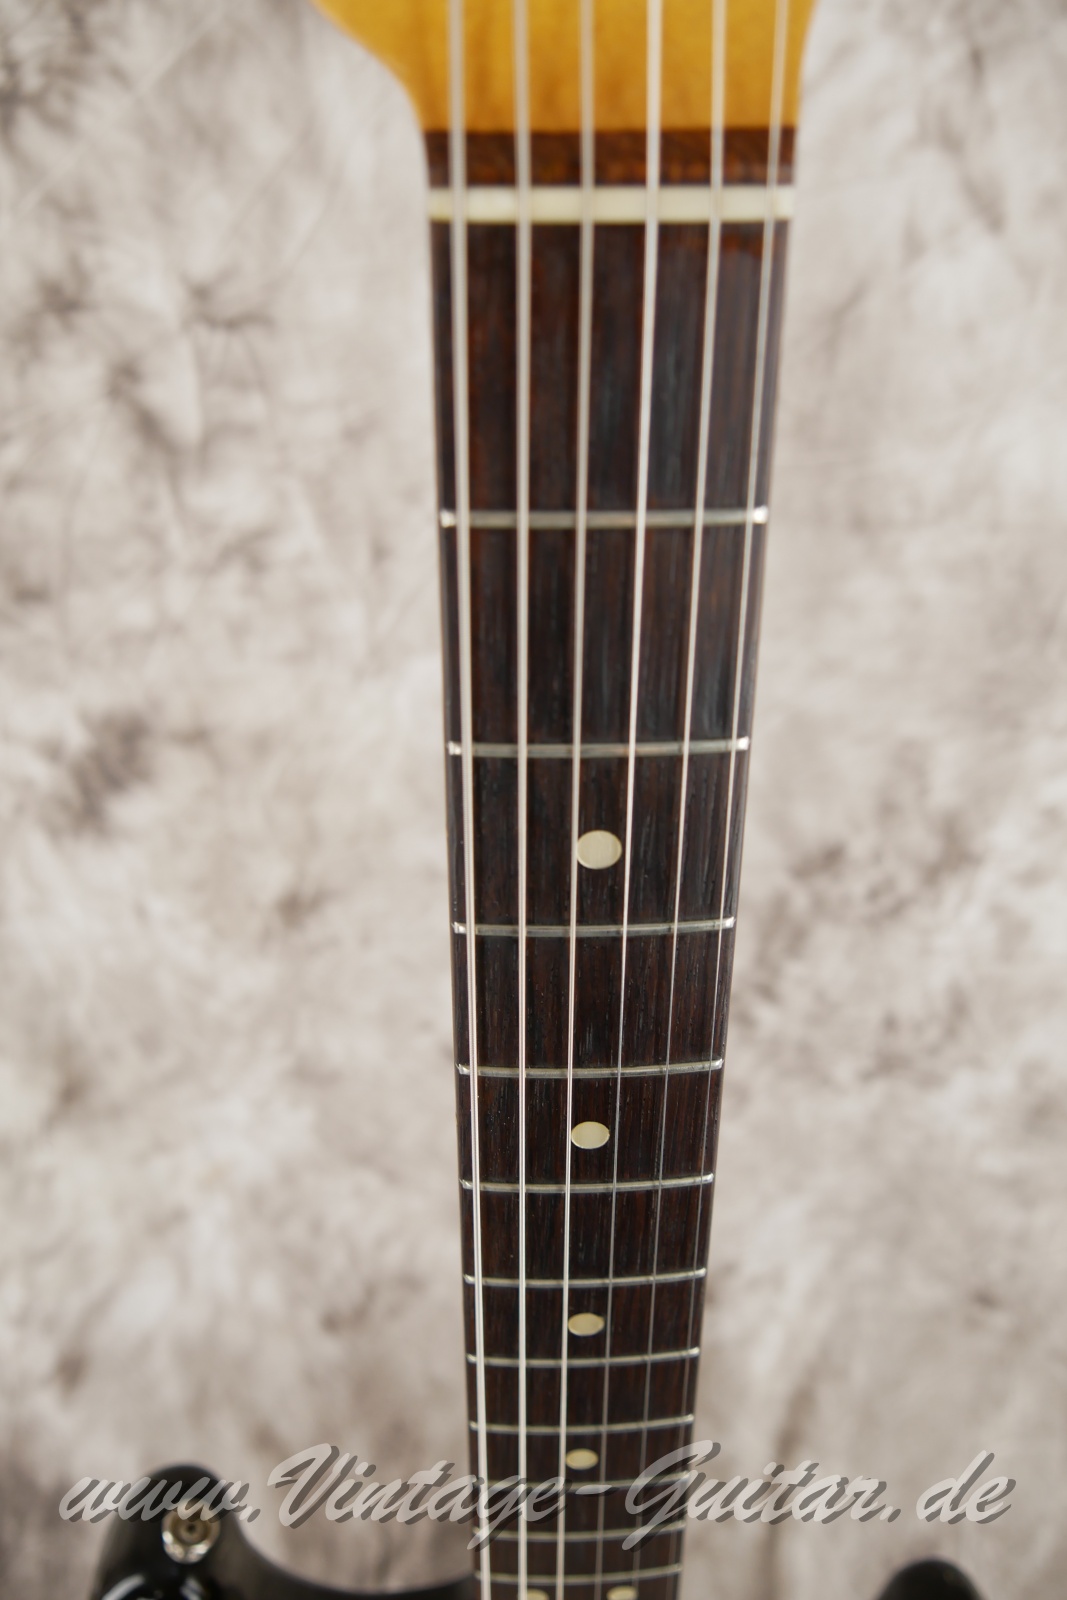 Fender-Stratocaster-1965-sunburst-007.JPG